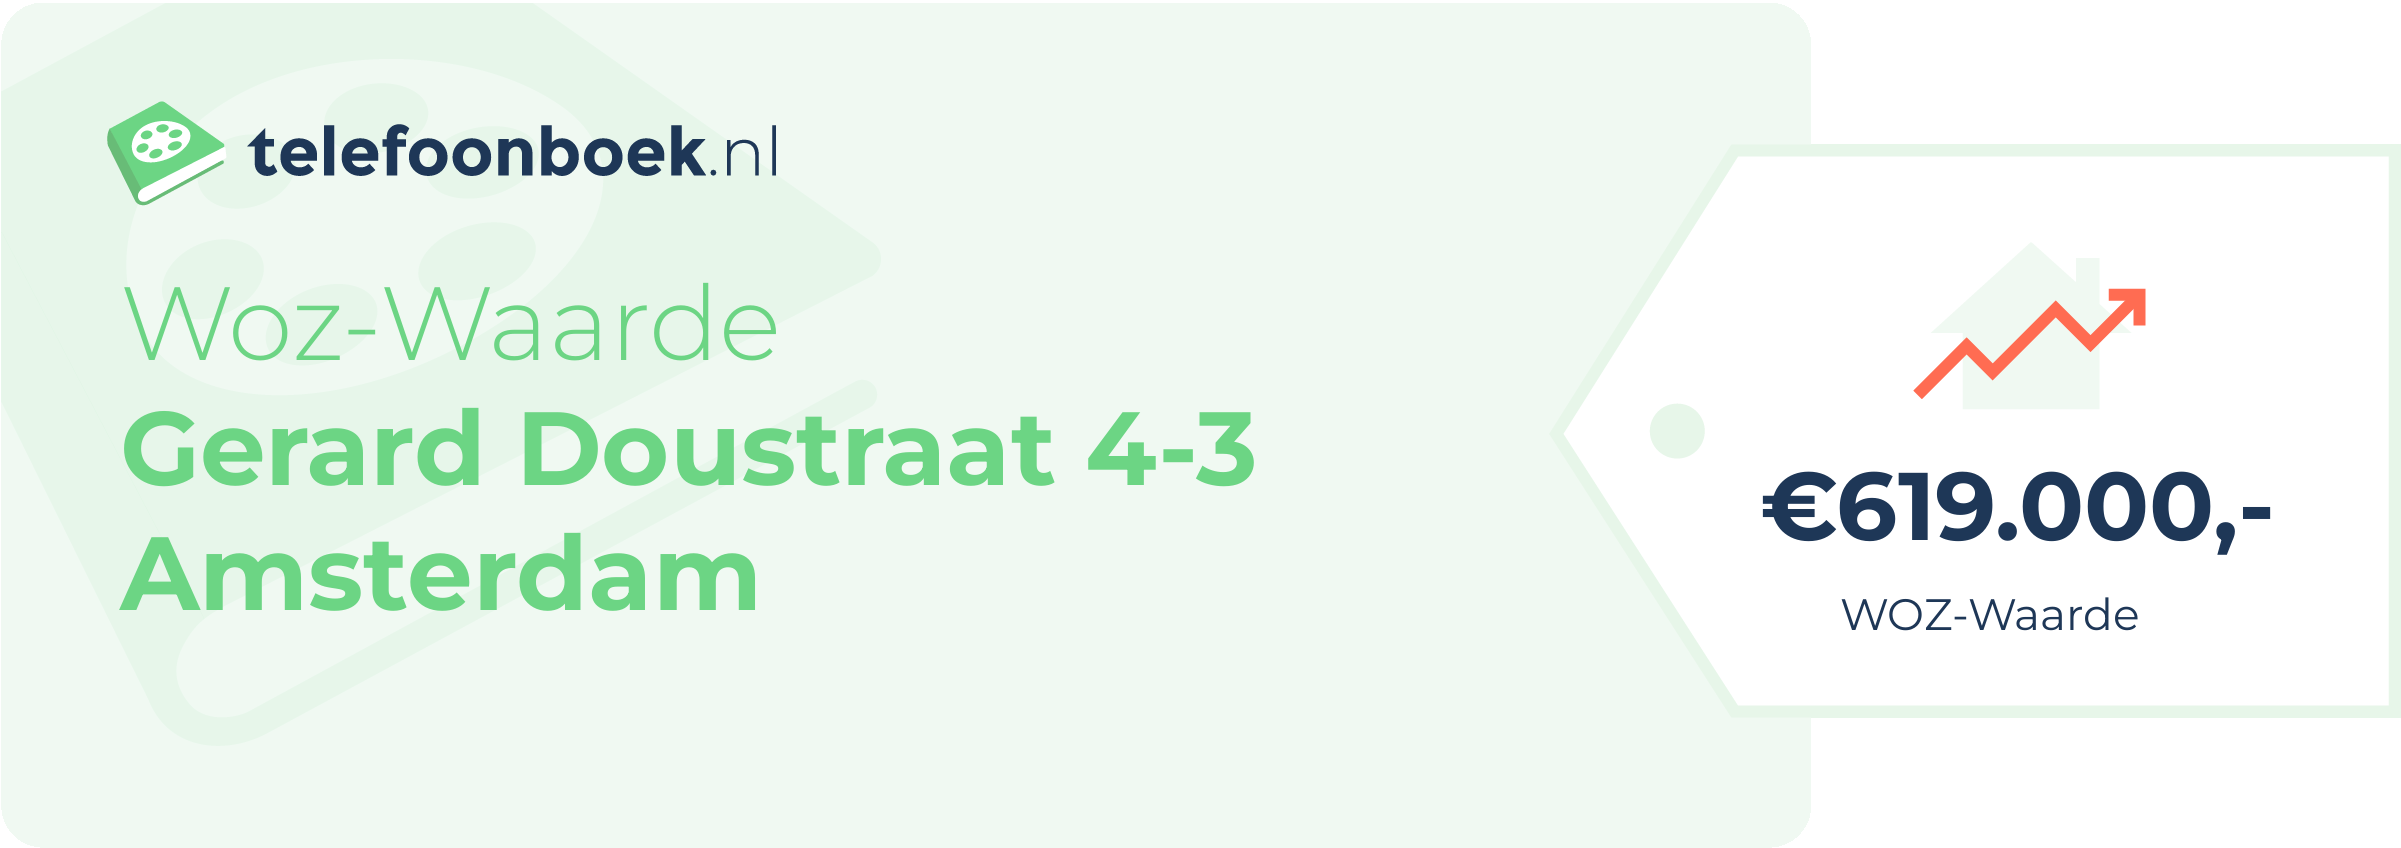 WOZ-waarde Gerard Doustraat 4-3 Amsterdam